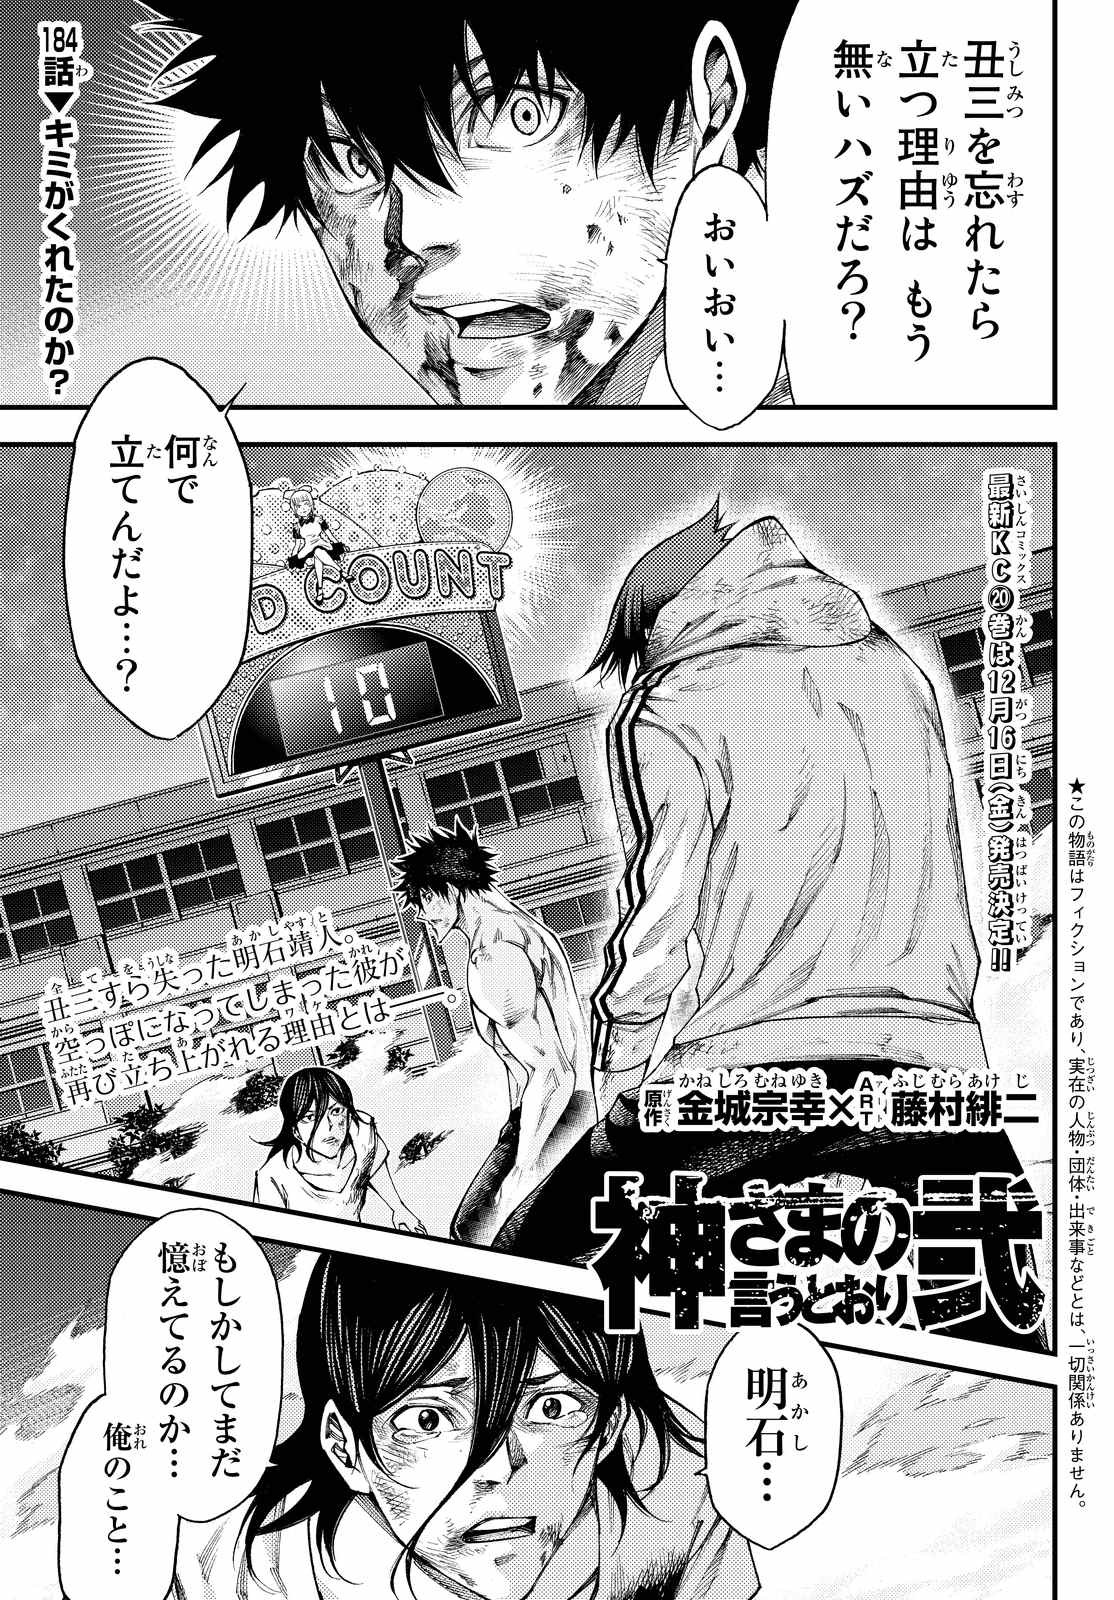 Kamisama no Ituori - Chapter 184 - Page 1